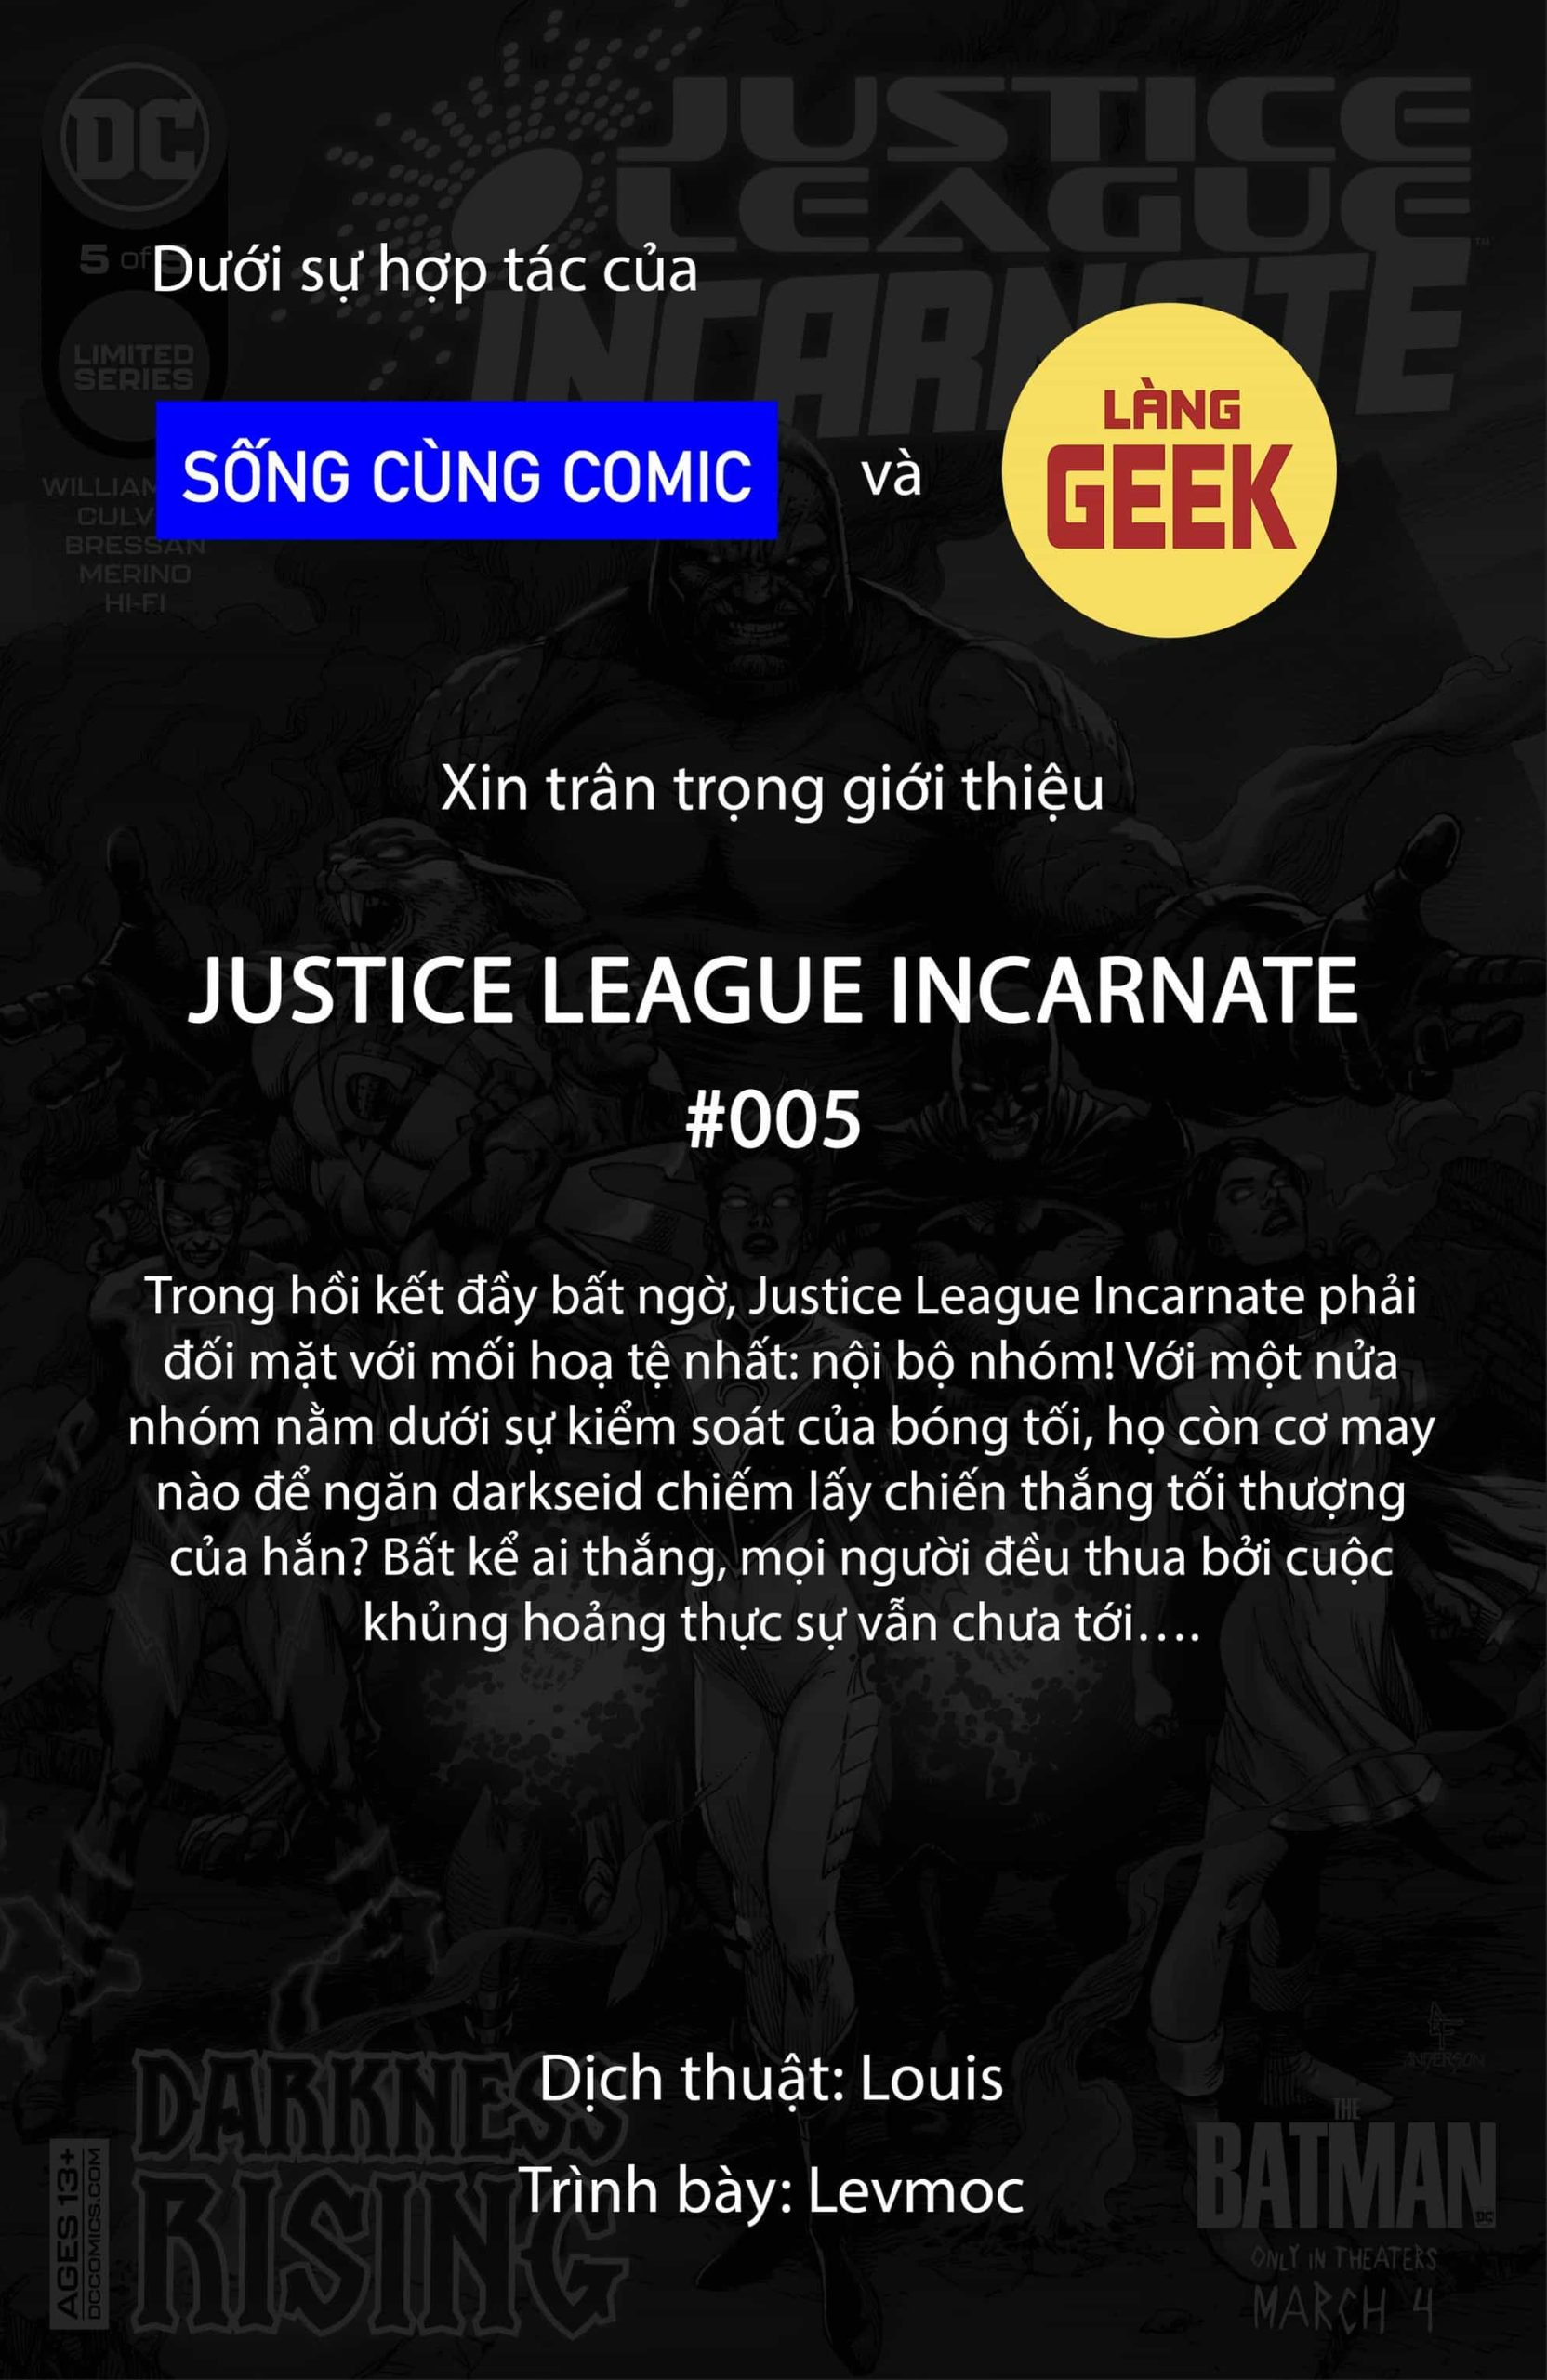 https://langgeek.net/wp-content/webpc-passthru.php?src=https://langgeek.net/wp-content/uploads/2022/03/Justice-League-Incarnate-2021-005-001-scaled.jpg&nocache=1